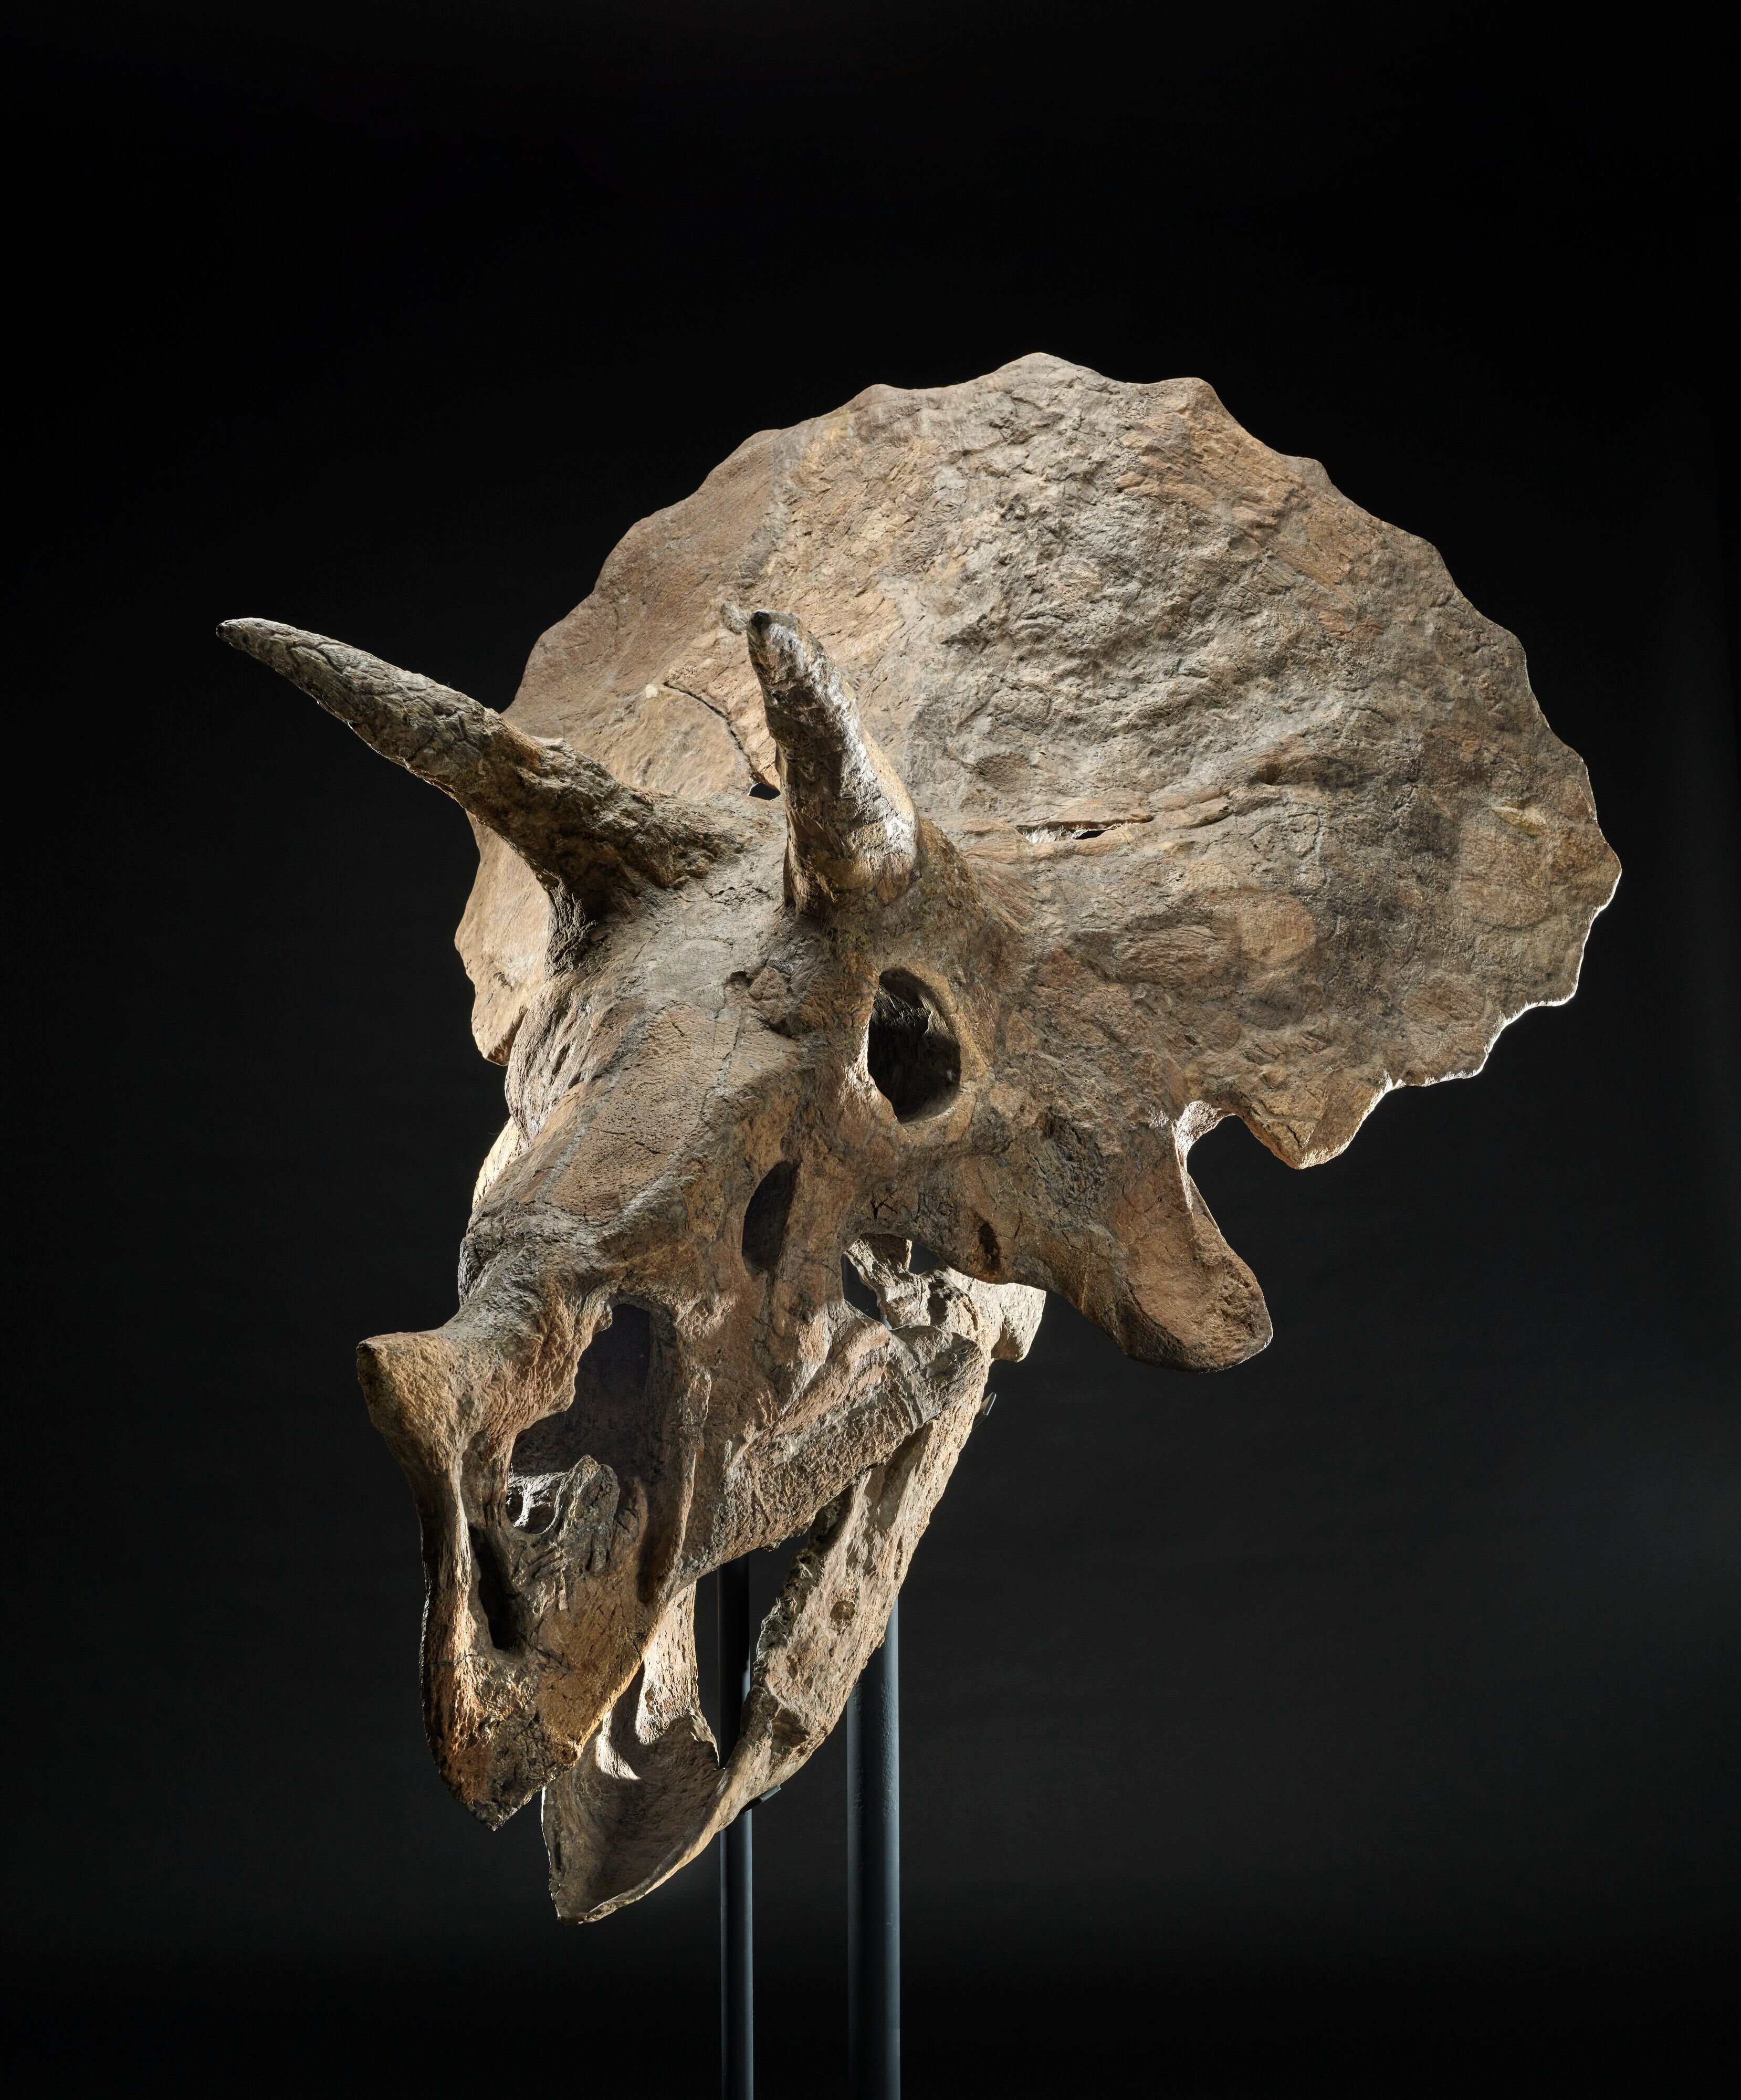 Ce crâne de tricératops appelé Baby Jane a été découvert dans le Dakota du Sud (Etats-Unis) en 1998. Il daterait de 66 millions d'années. Christie's images limited 2023